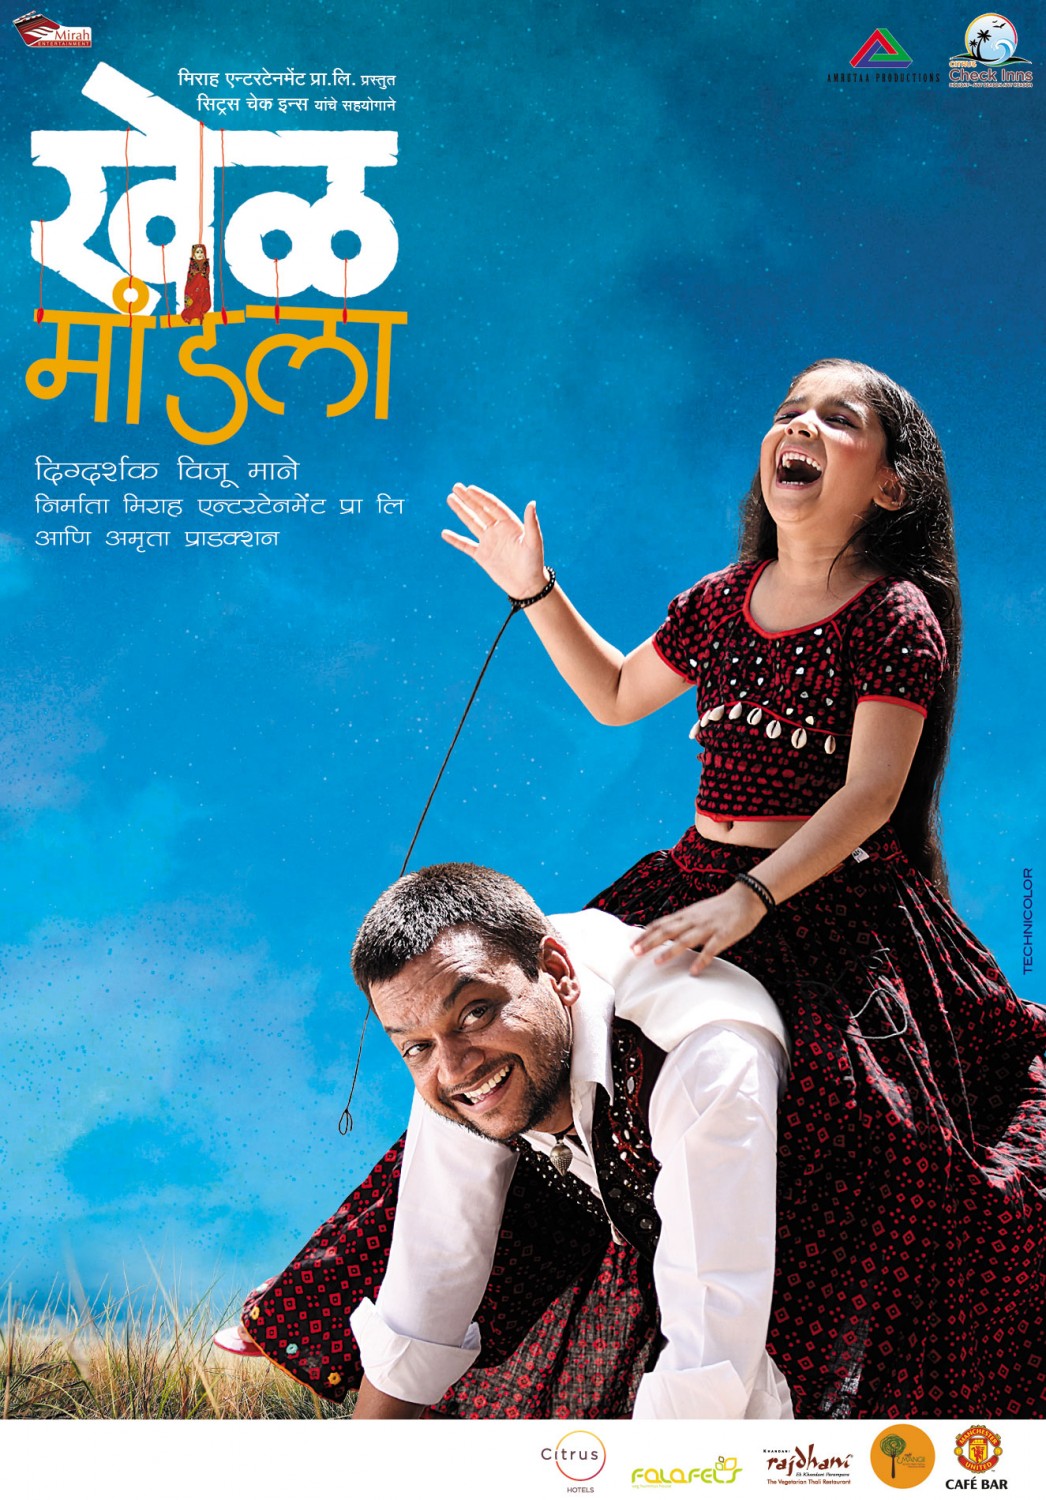 Extra Large Movie Poster Image for Khel Mandala (#7 of 13)